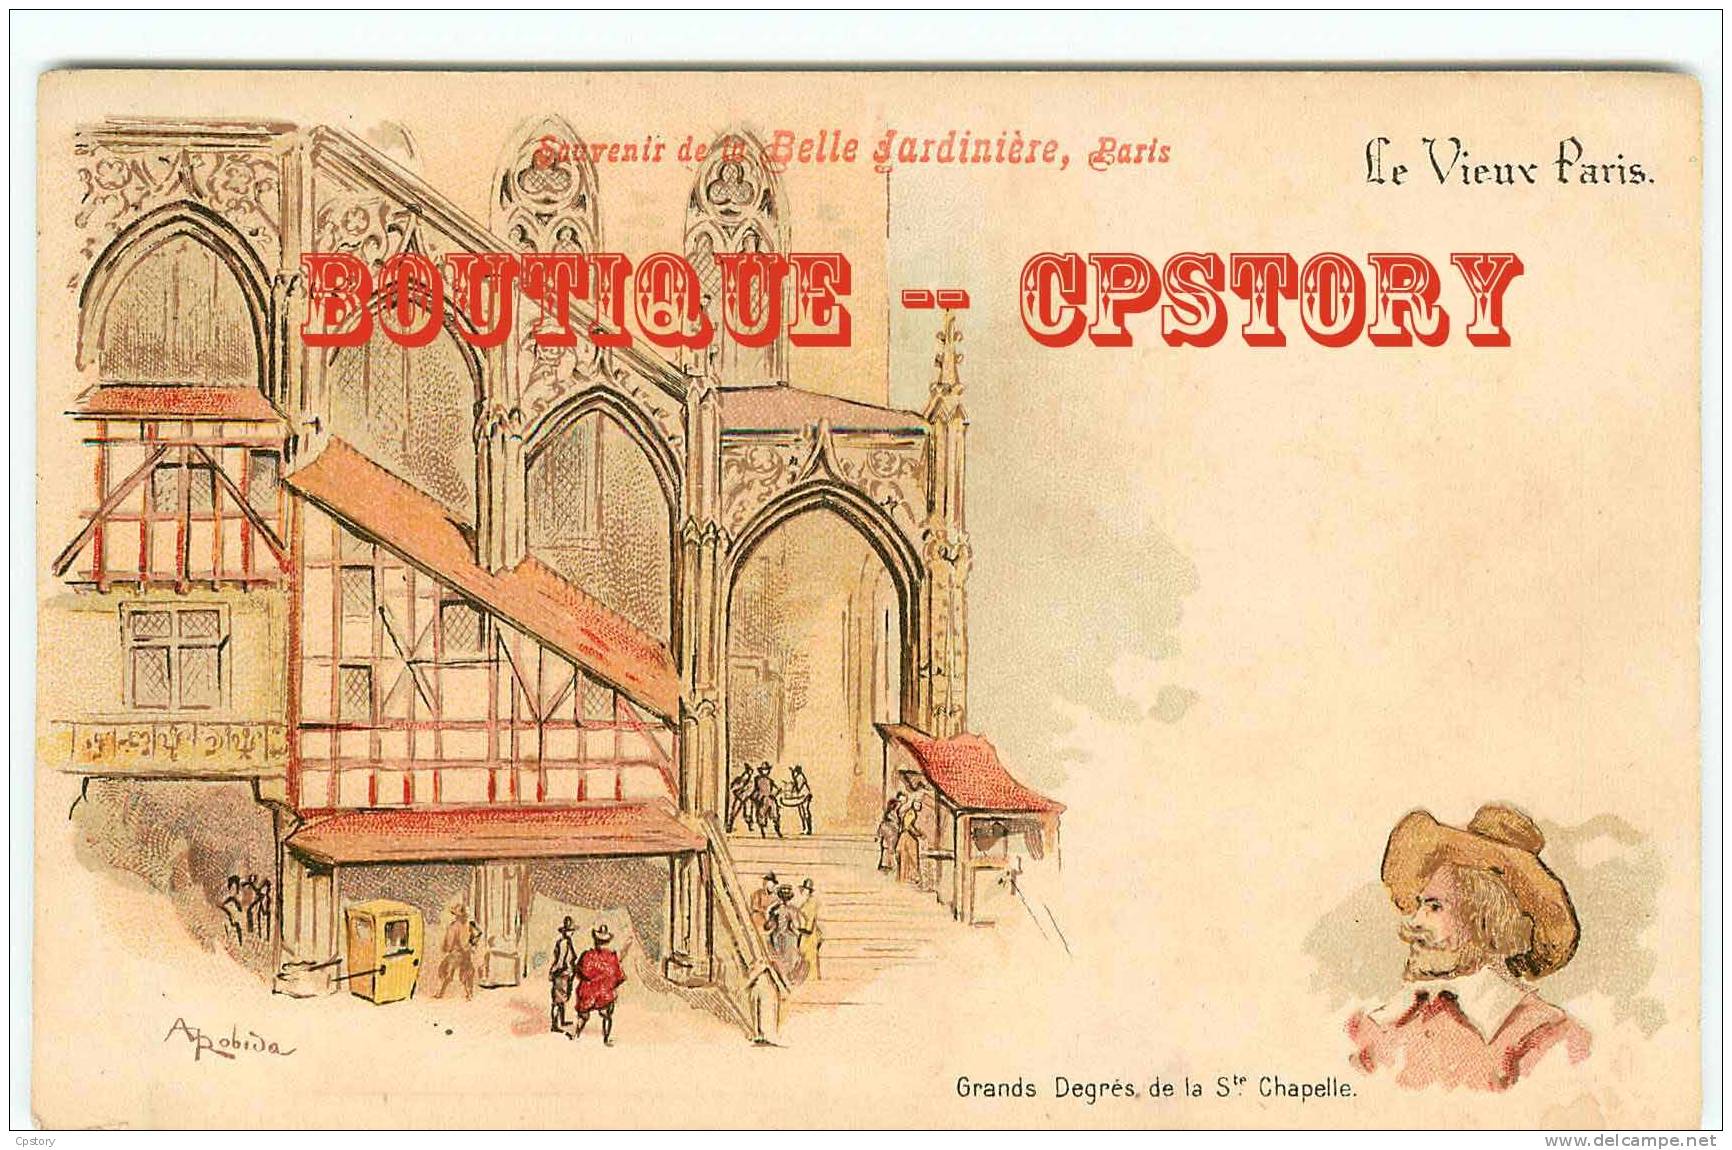 ROBIDA - VIEUX PARIS - Grands Degrés De La Sainte Chapelle - Publicité Belle Jardinière - Dos Scané - Robida